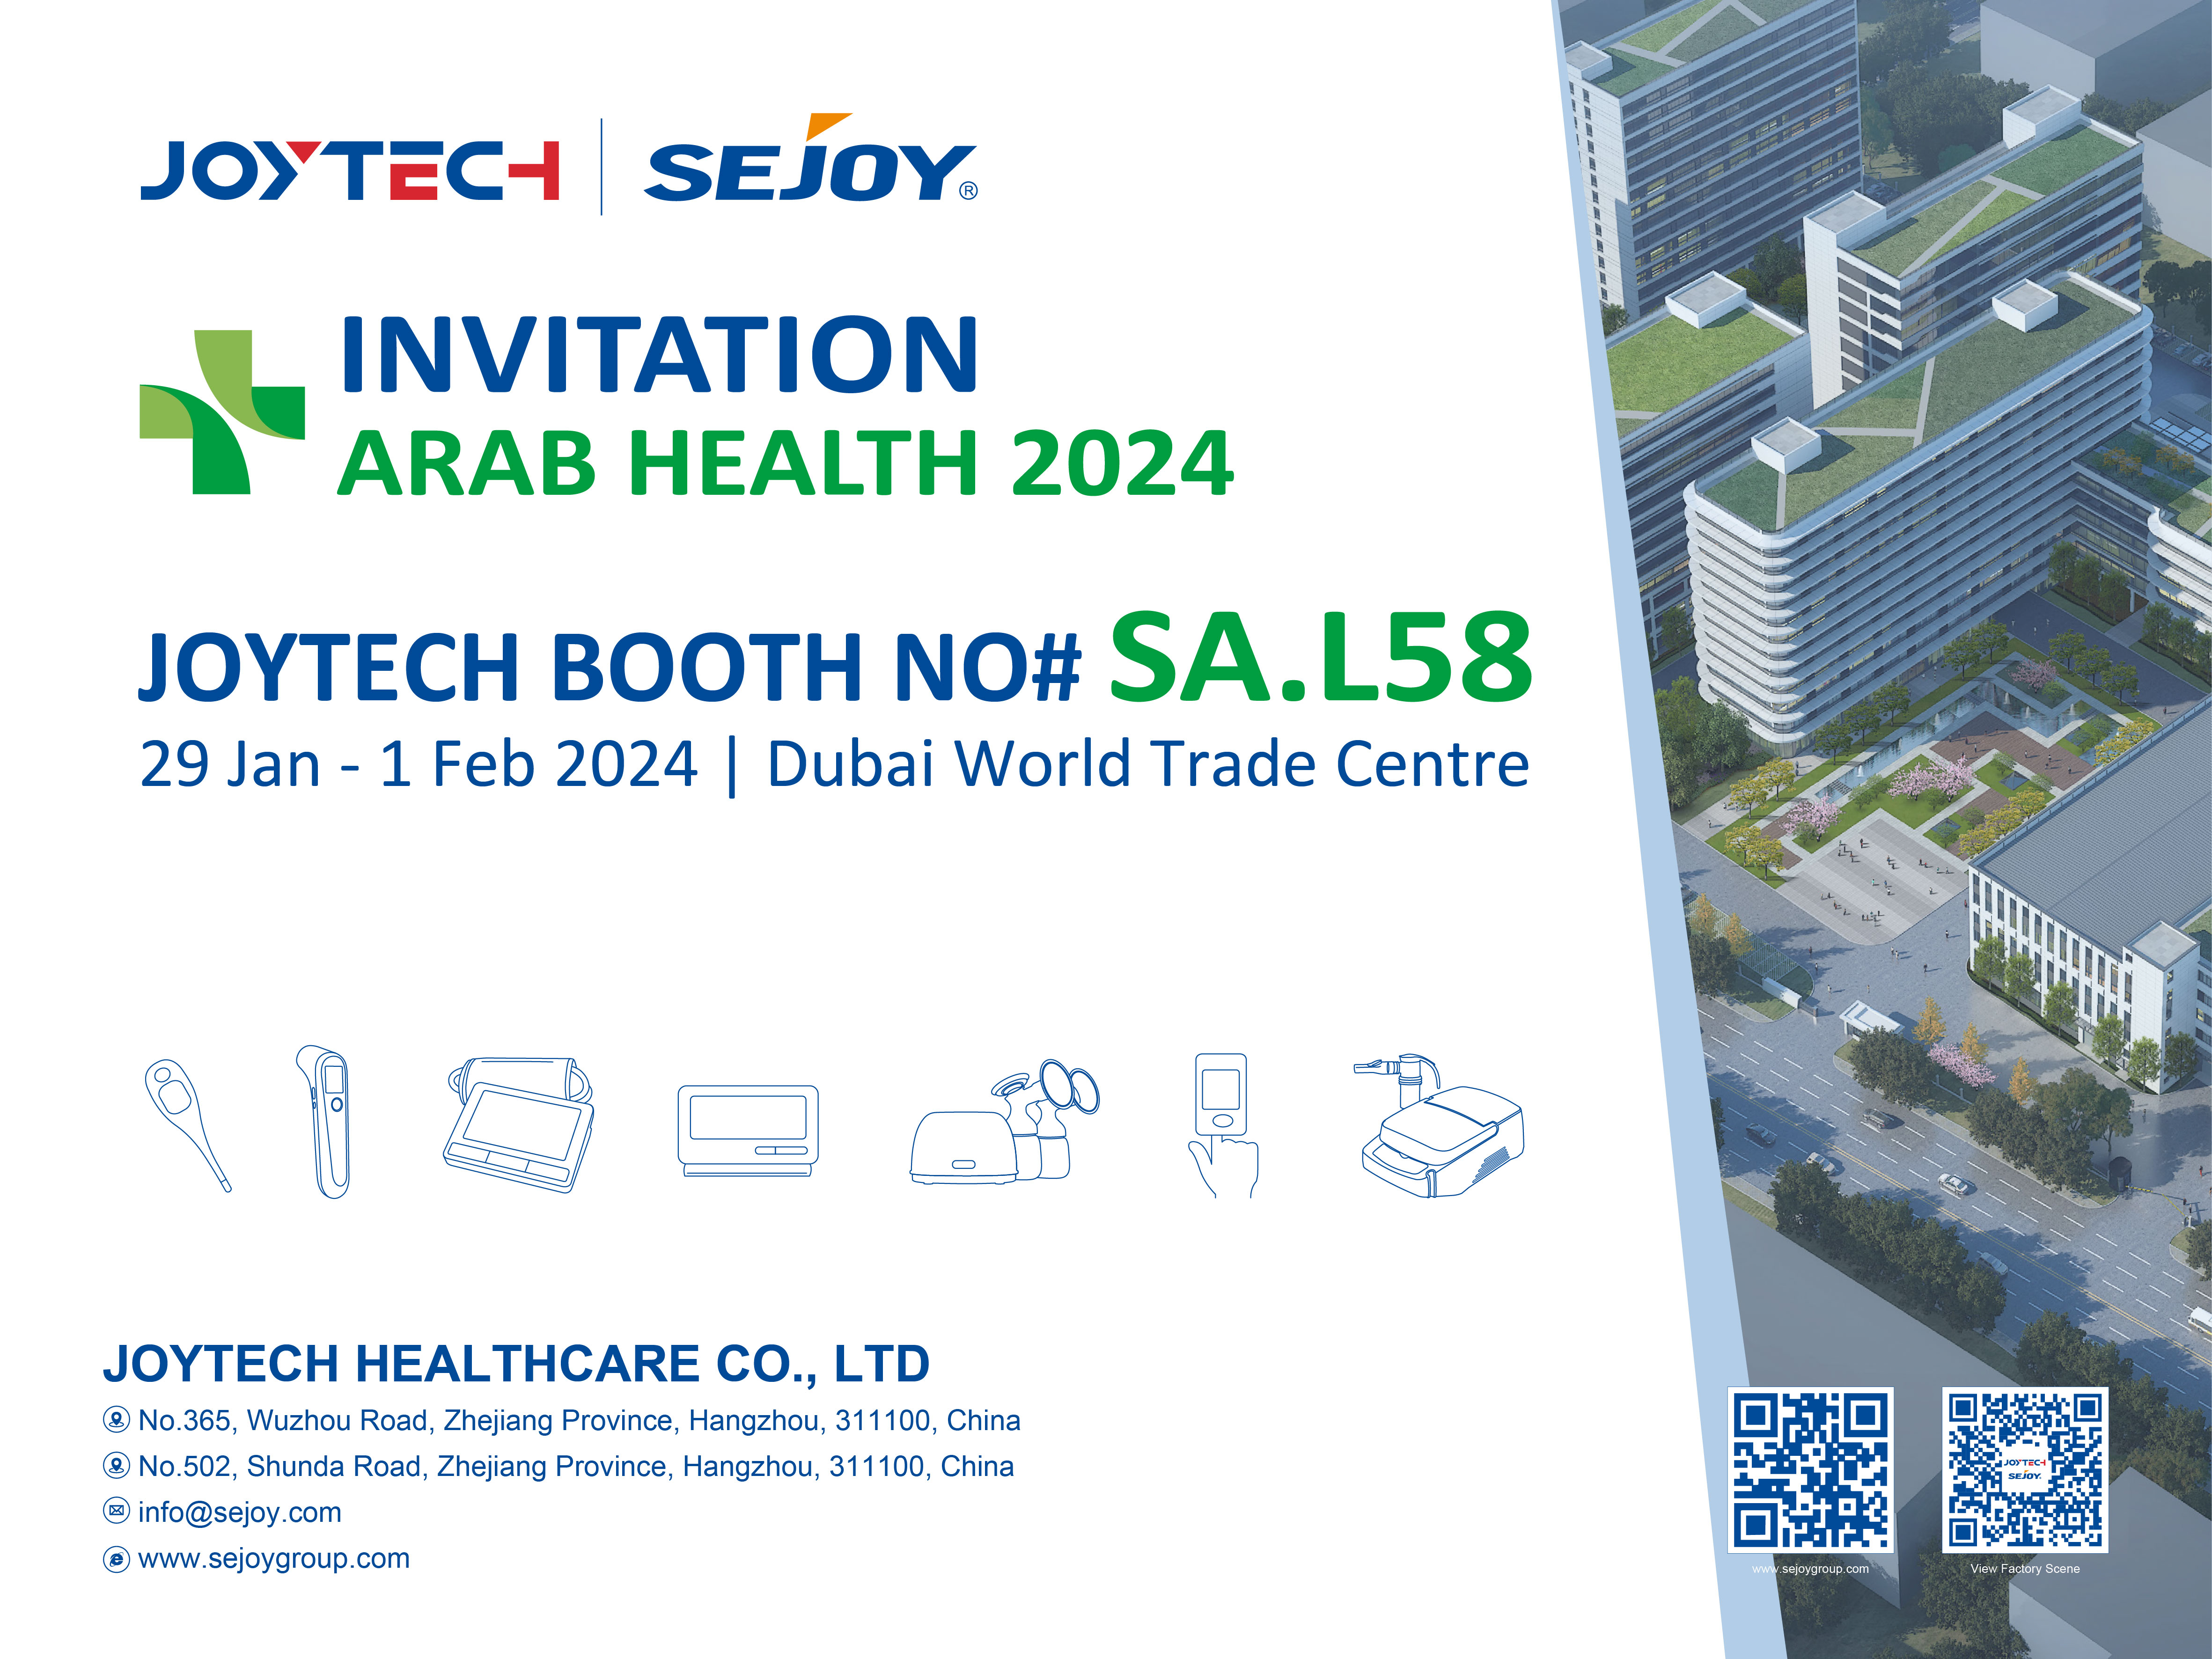 Terveemmän huomisen avaaminen: Liity Joytechiin Arab Health 2024 -tapahtumaan!